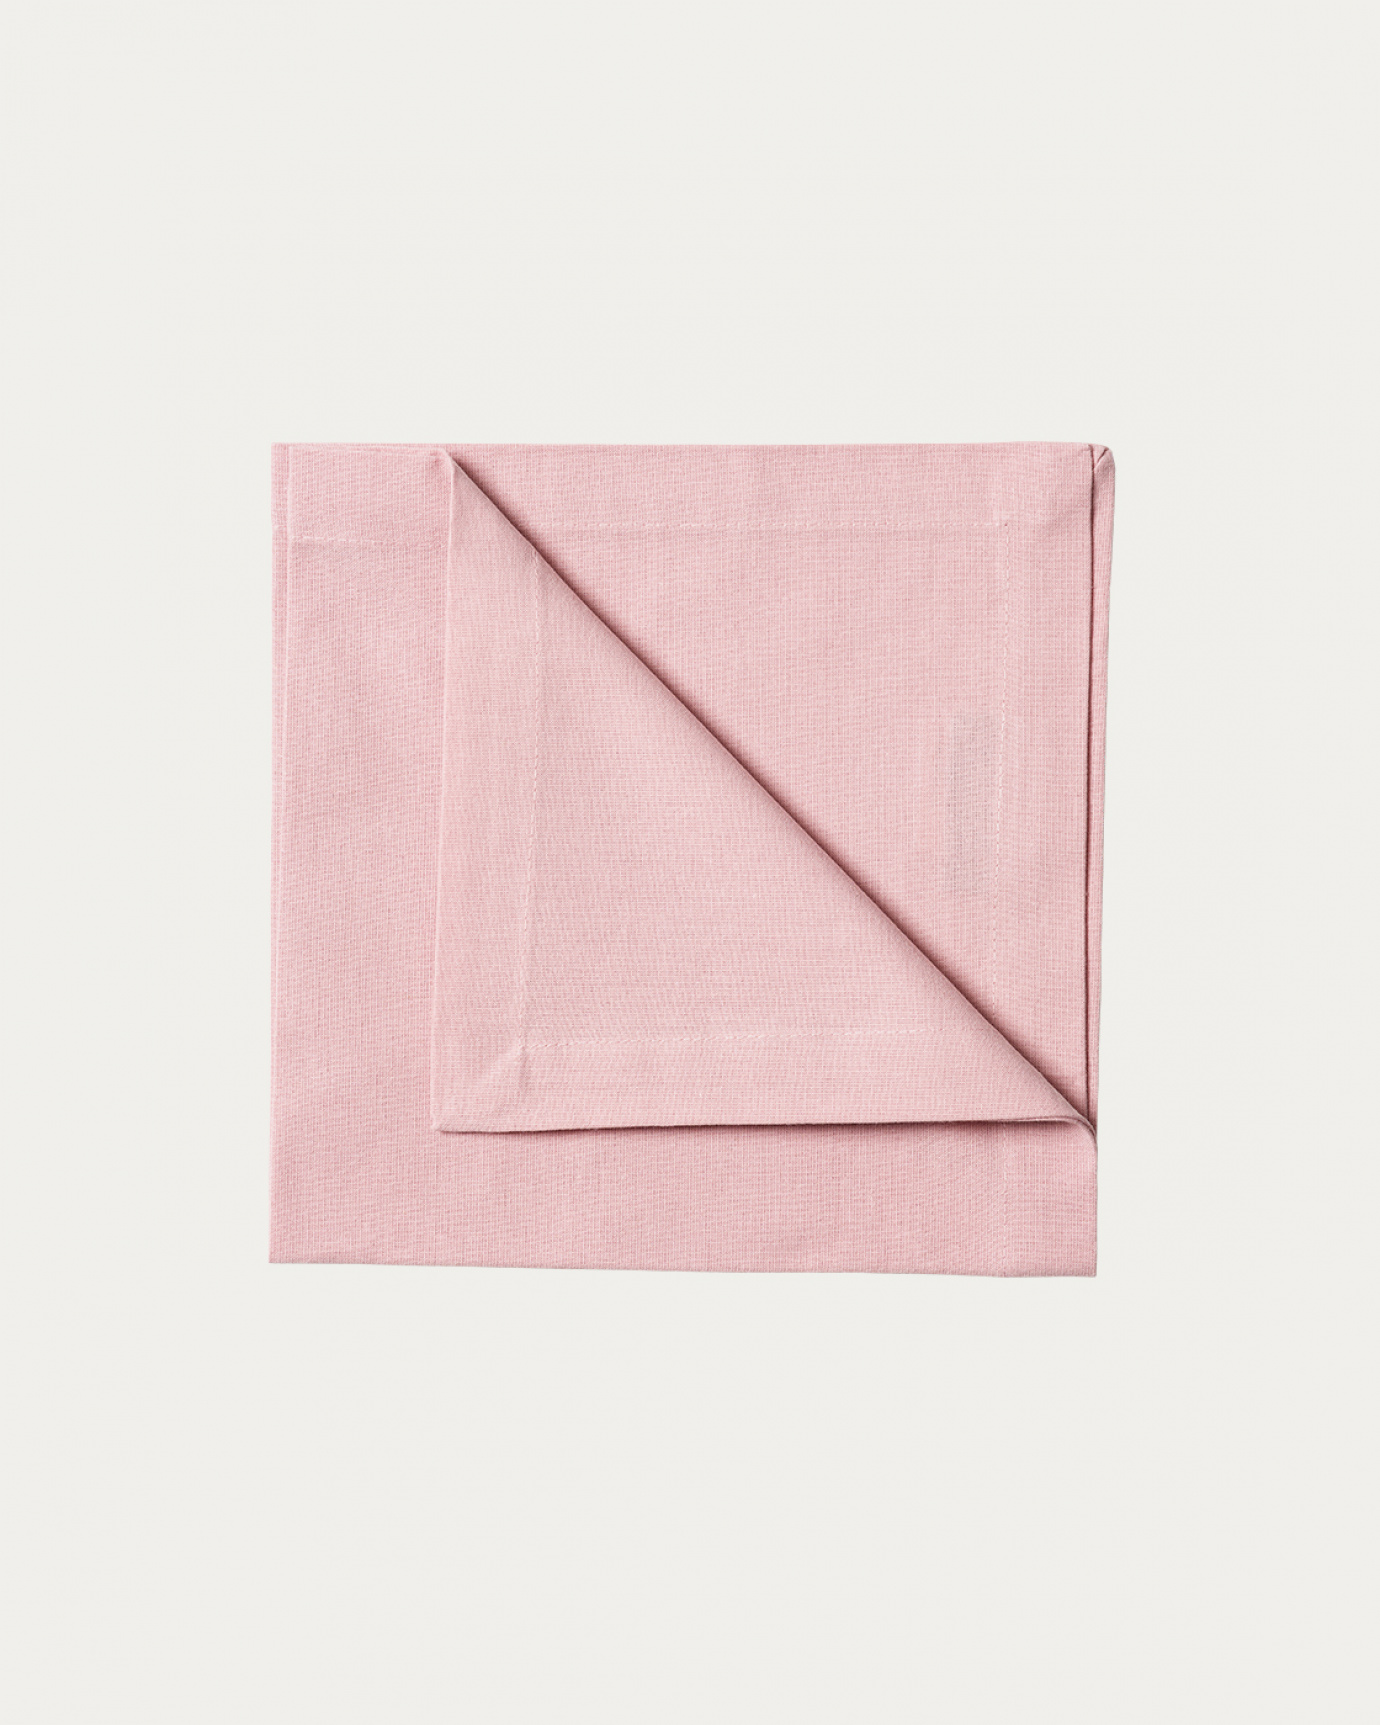 Immagine prodotto rosa antico ROBERT tovagliolo in morbido cotone di LINUM DESIGN. Dimensioni 45x45 cm e venduto in 4-pezzi.